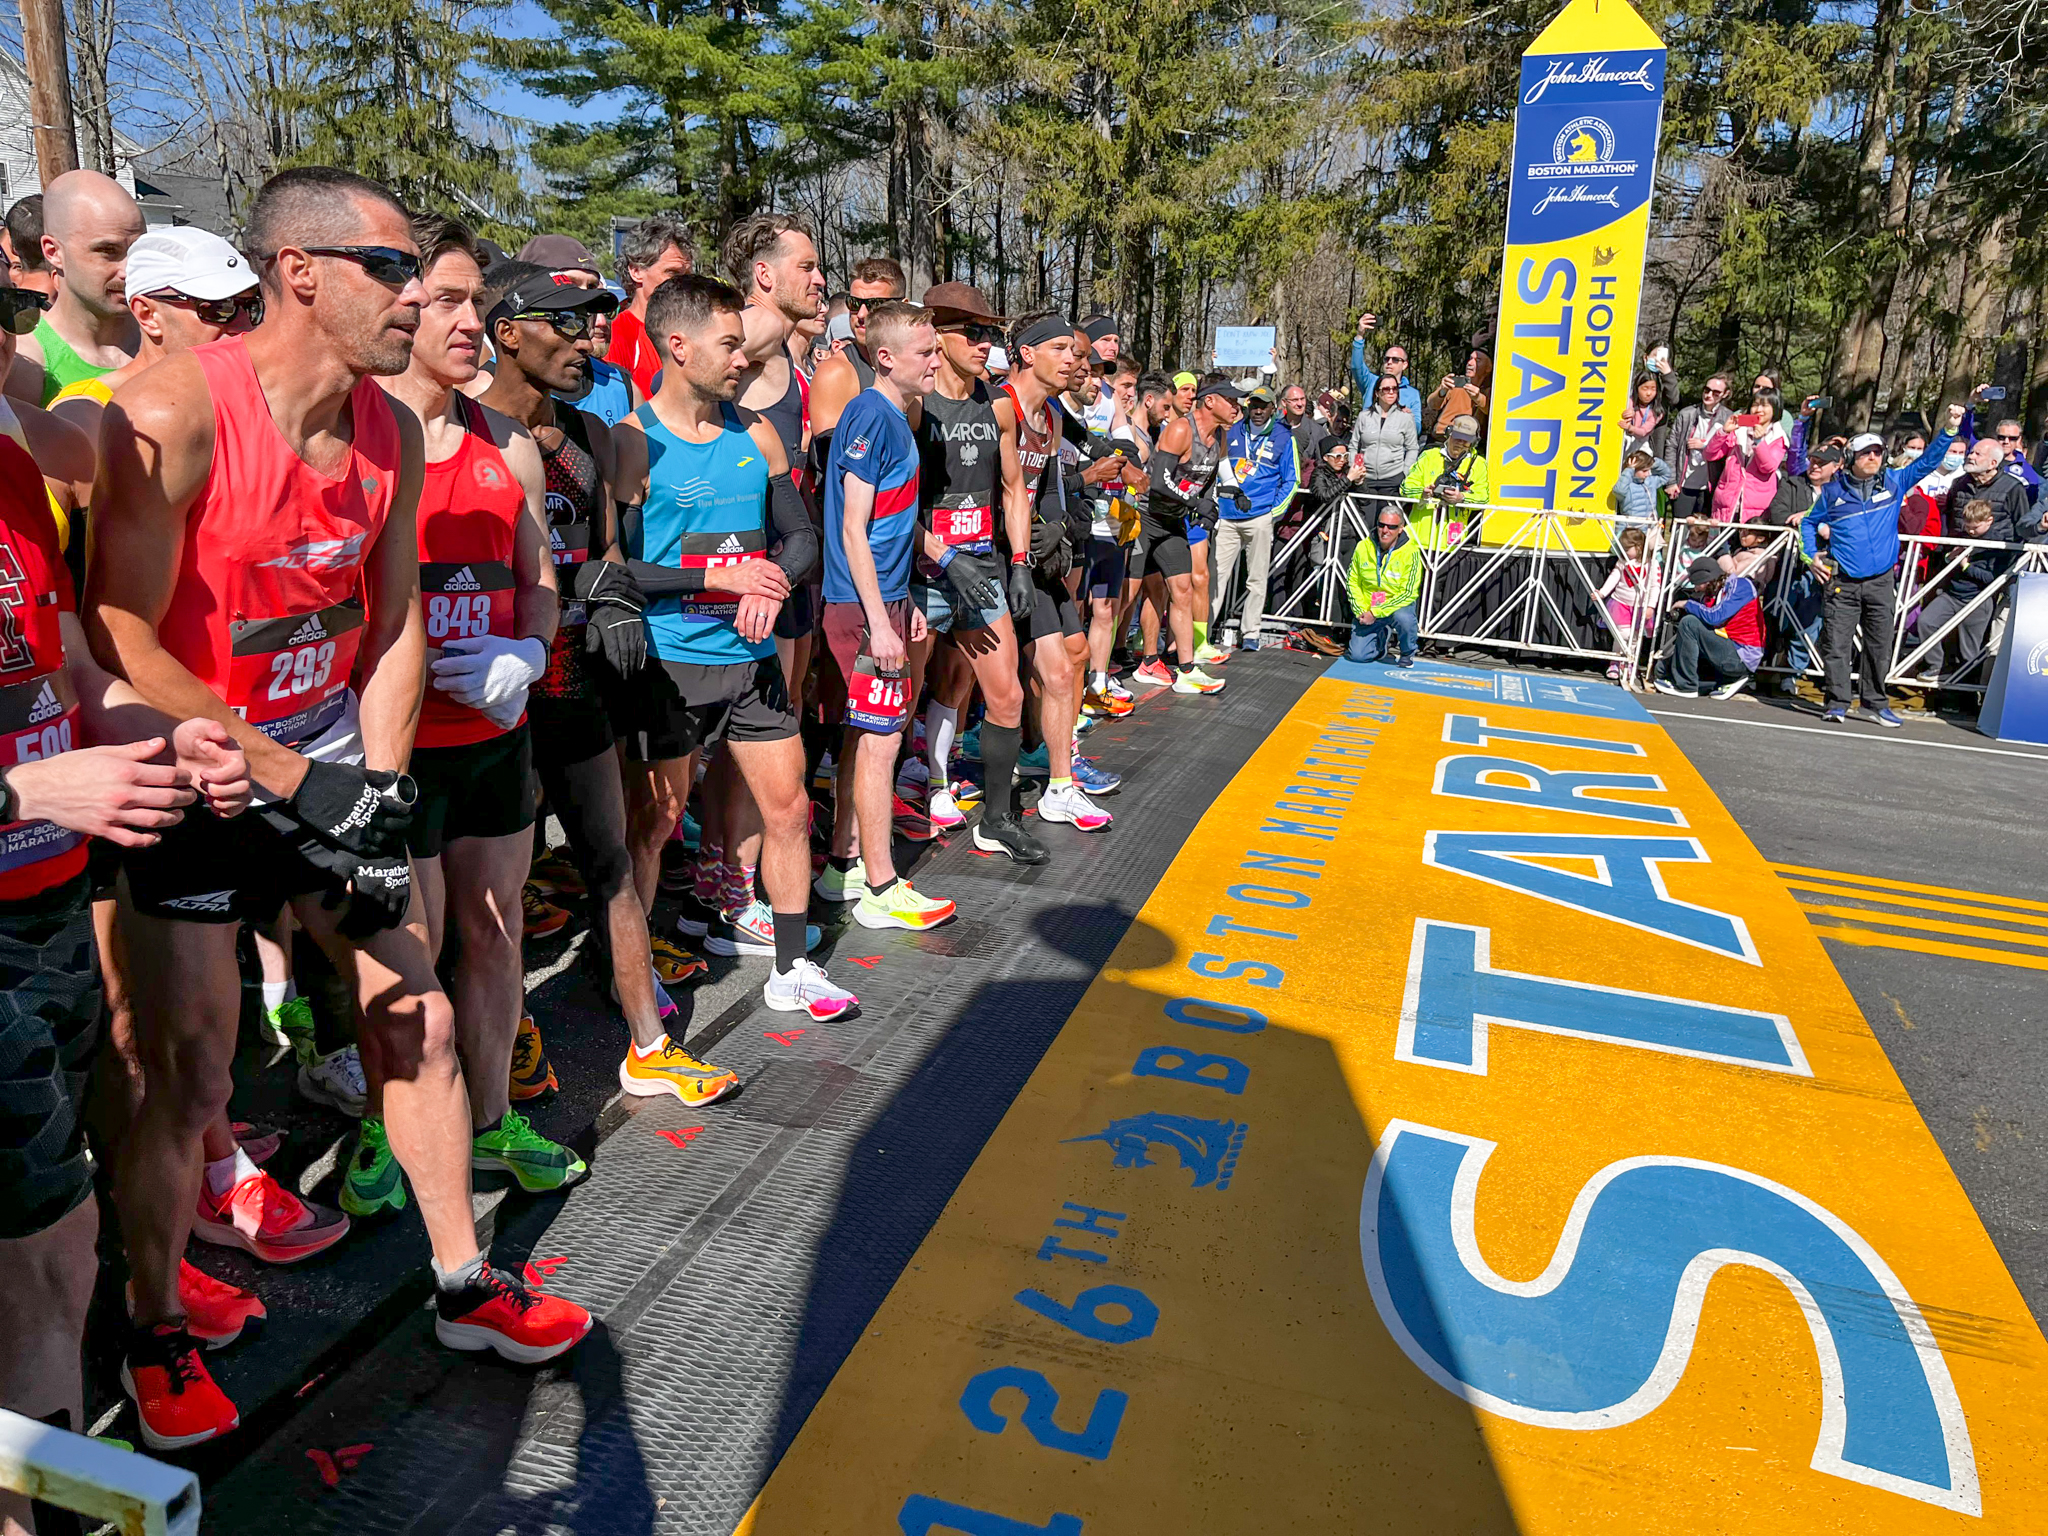 Town to receive 50 Boston Marathon entries to distribute to local groups